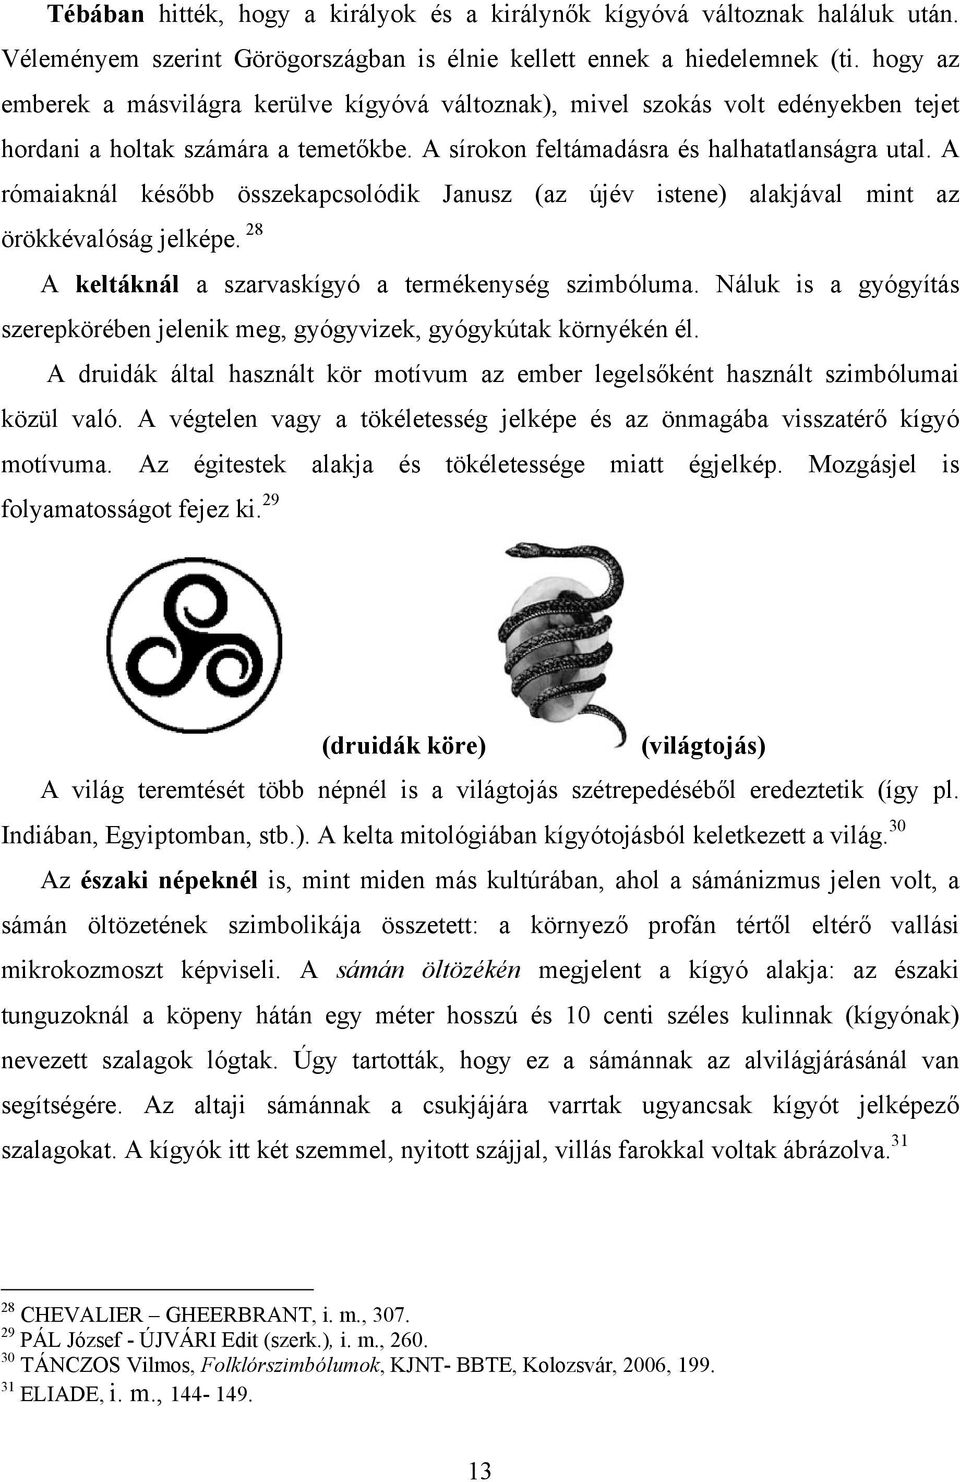 A rómaiaknál később összekapcsolódik Janusz (az újév istene) alakjával mint az örökkévalóság jelképe. 28 A keltáknál a szarvaskígyó a termékenység szimbóluma.